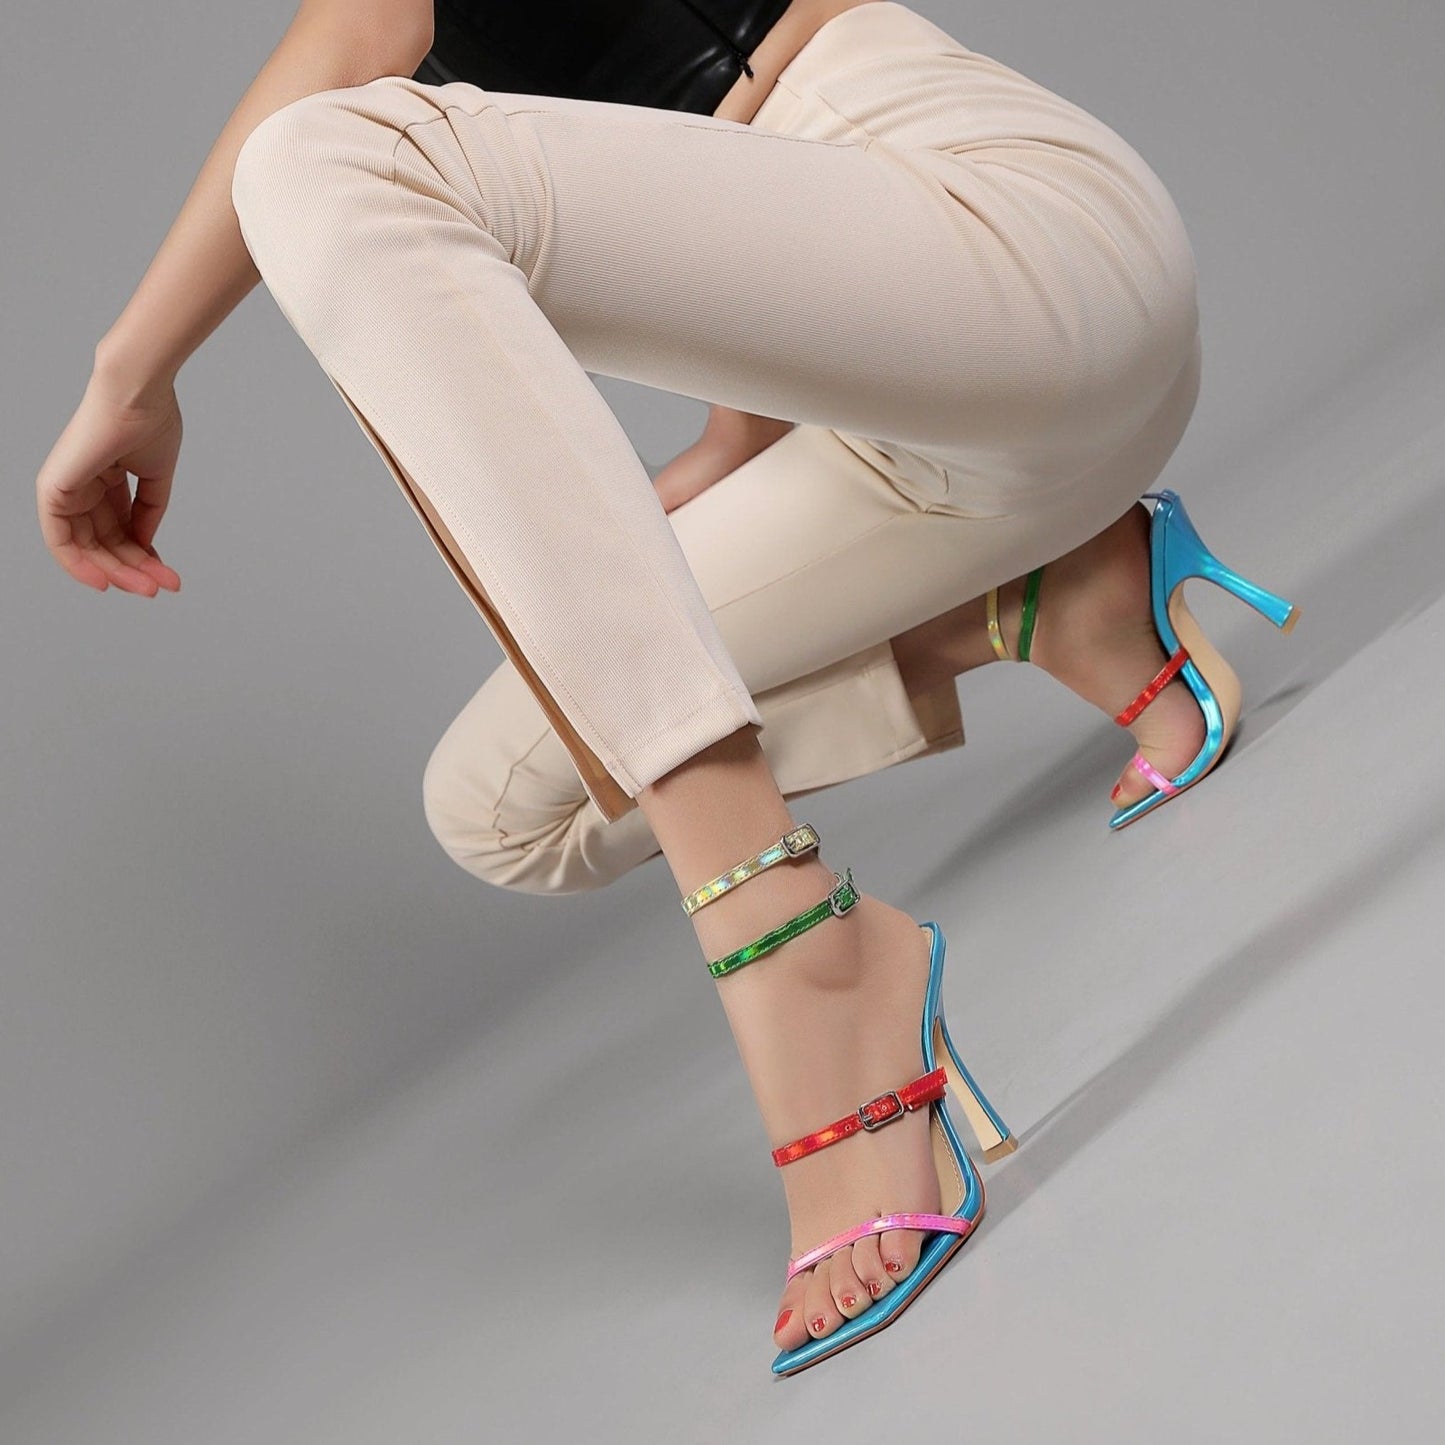 Audette 99 Square Strappy Sandals - Vivianly Shoes - Stilettos